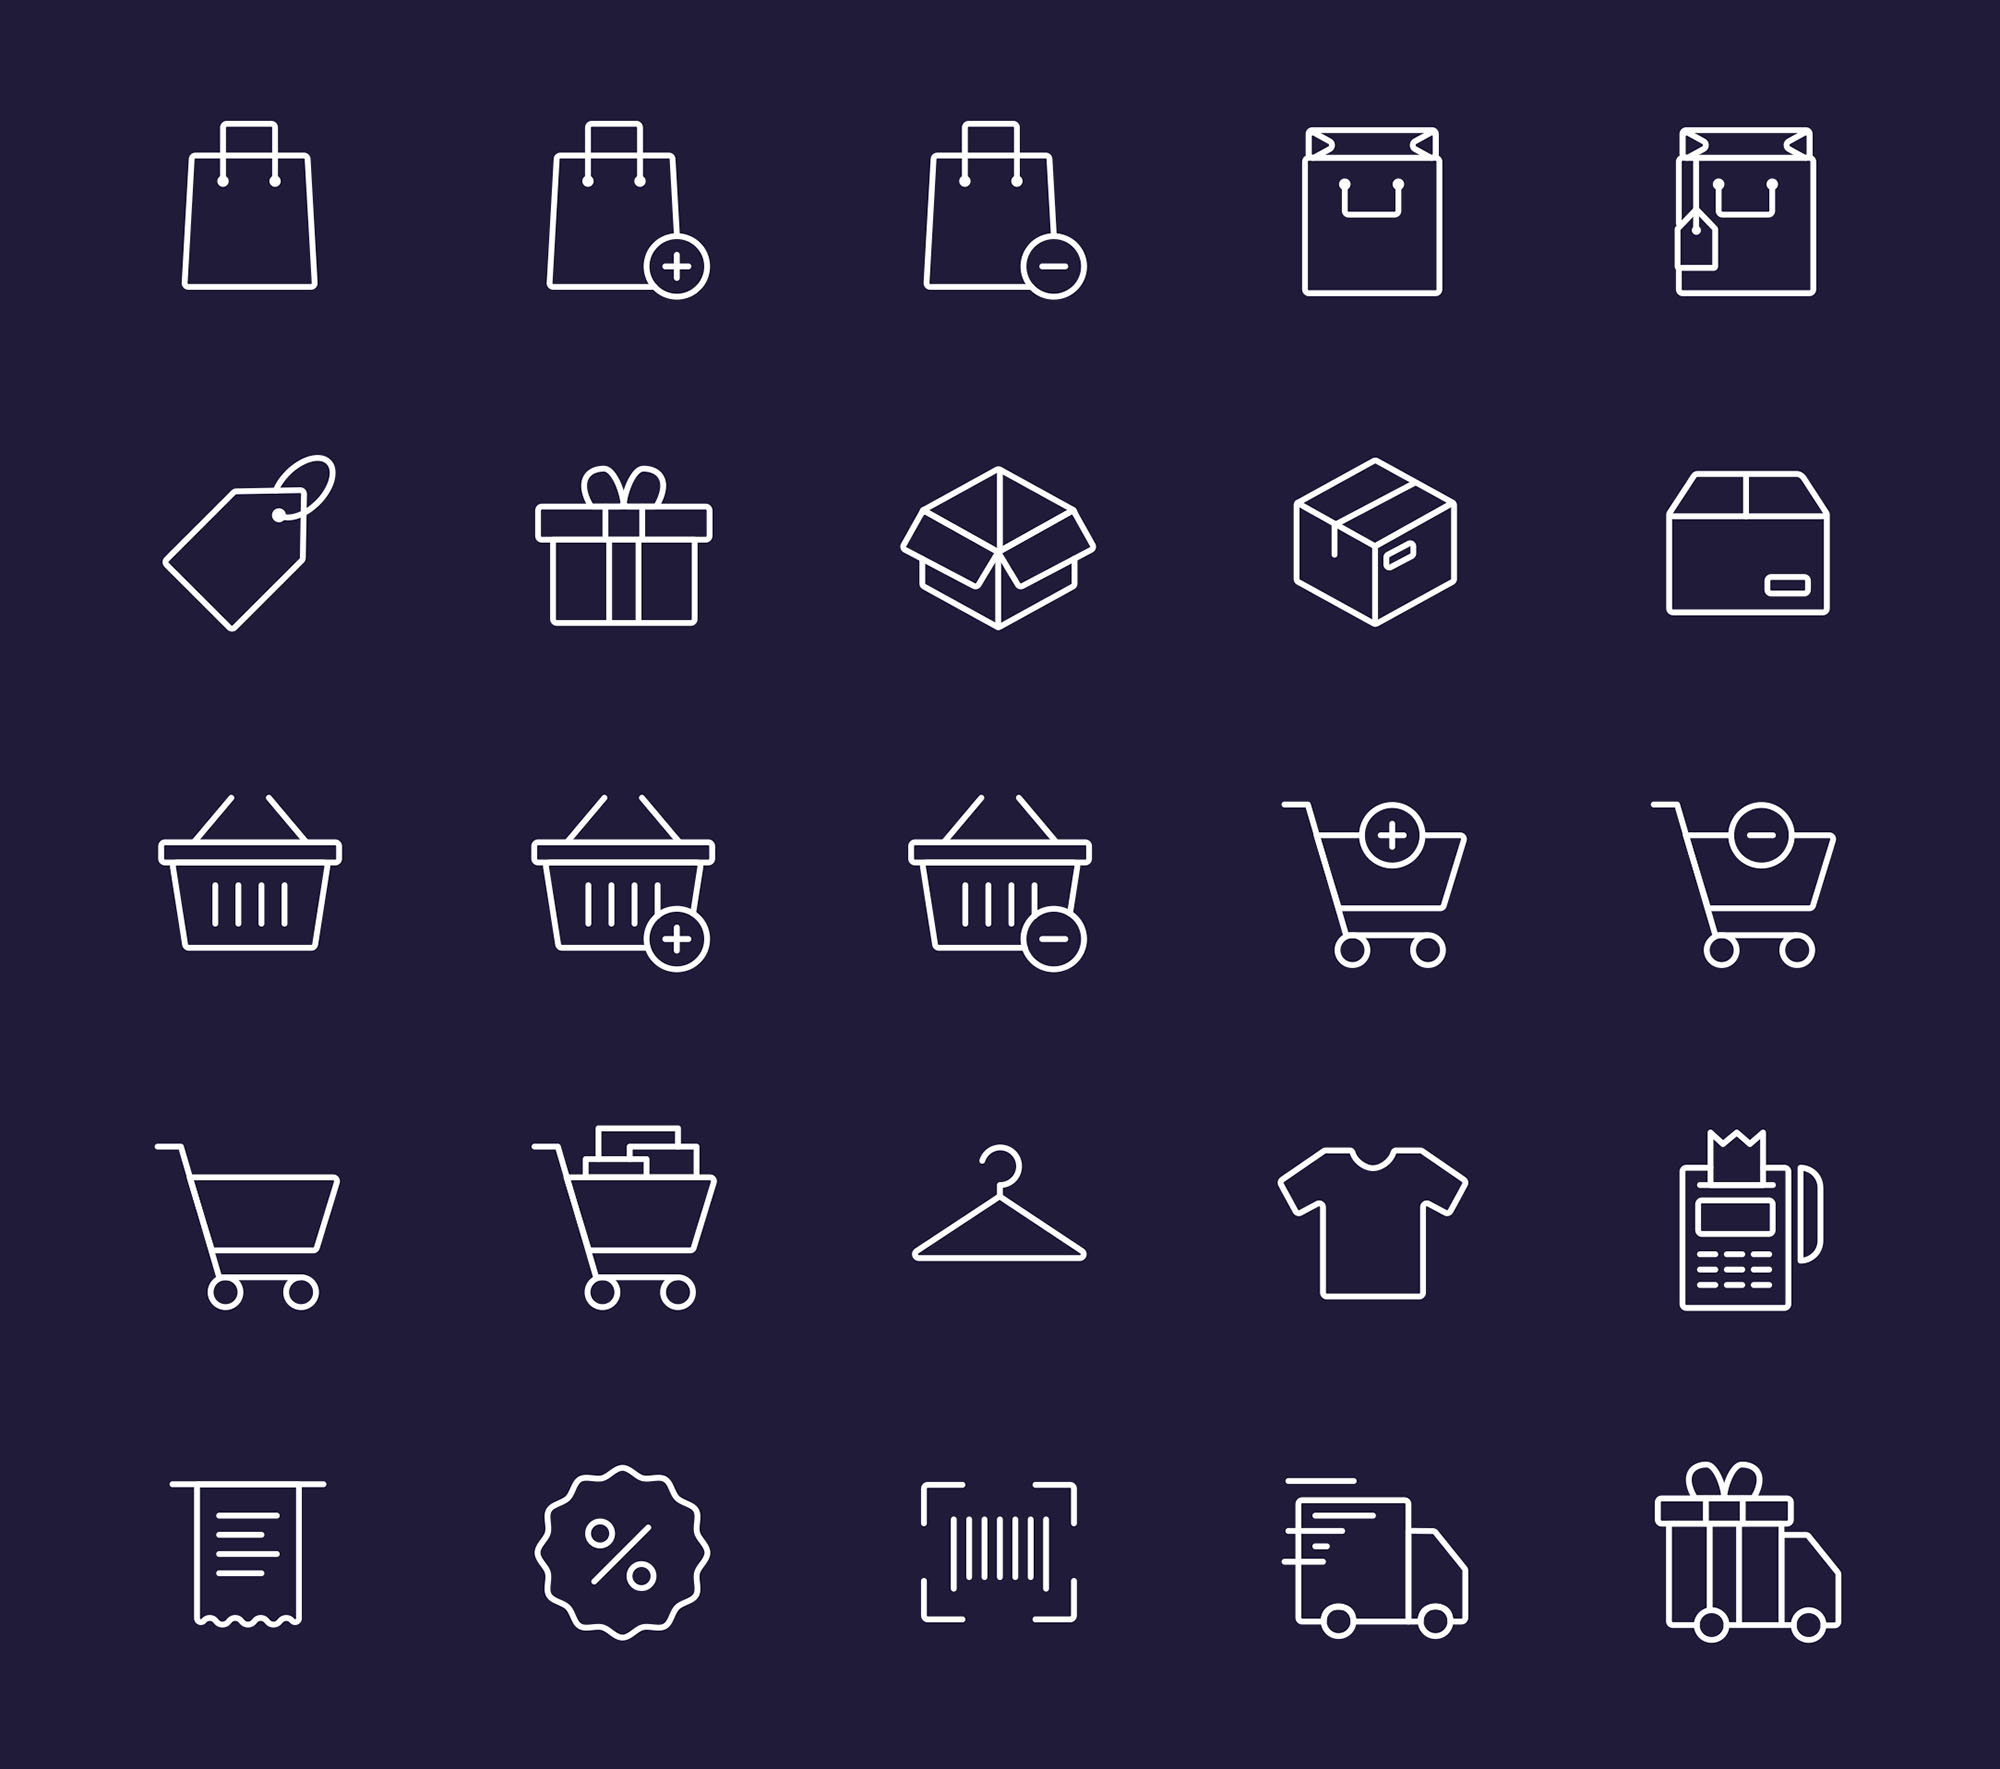 购物主题矢量图标设计素材 Vector Shopping Icons插图